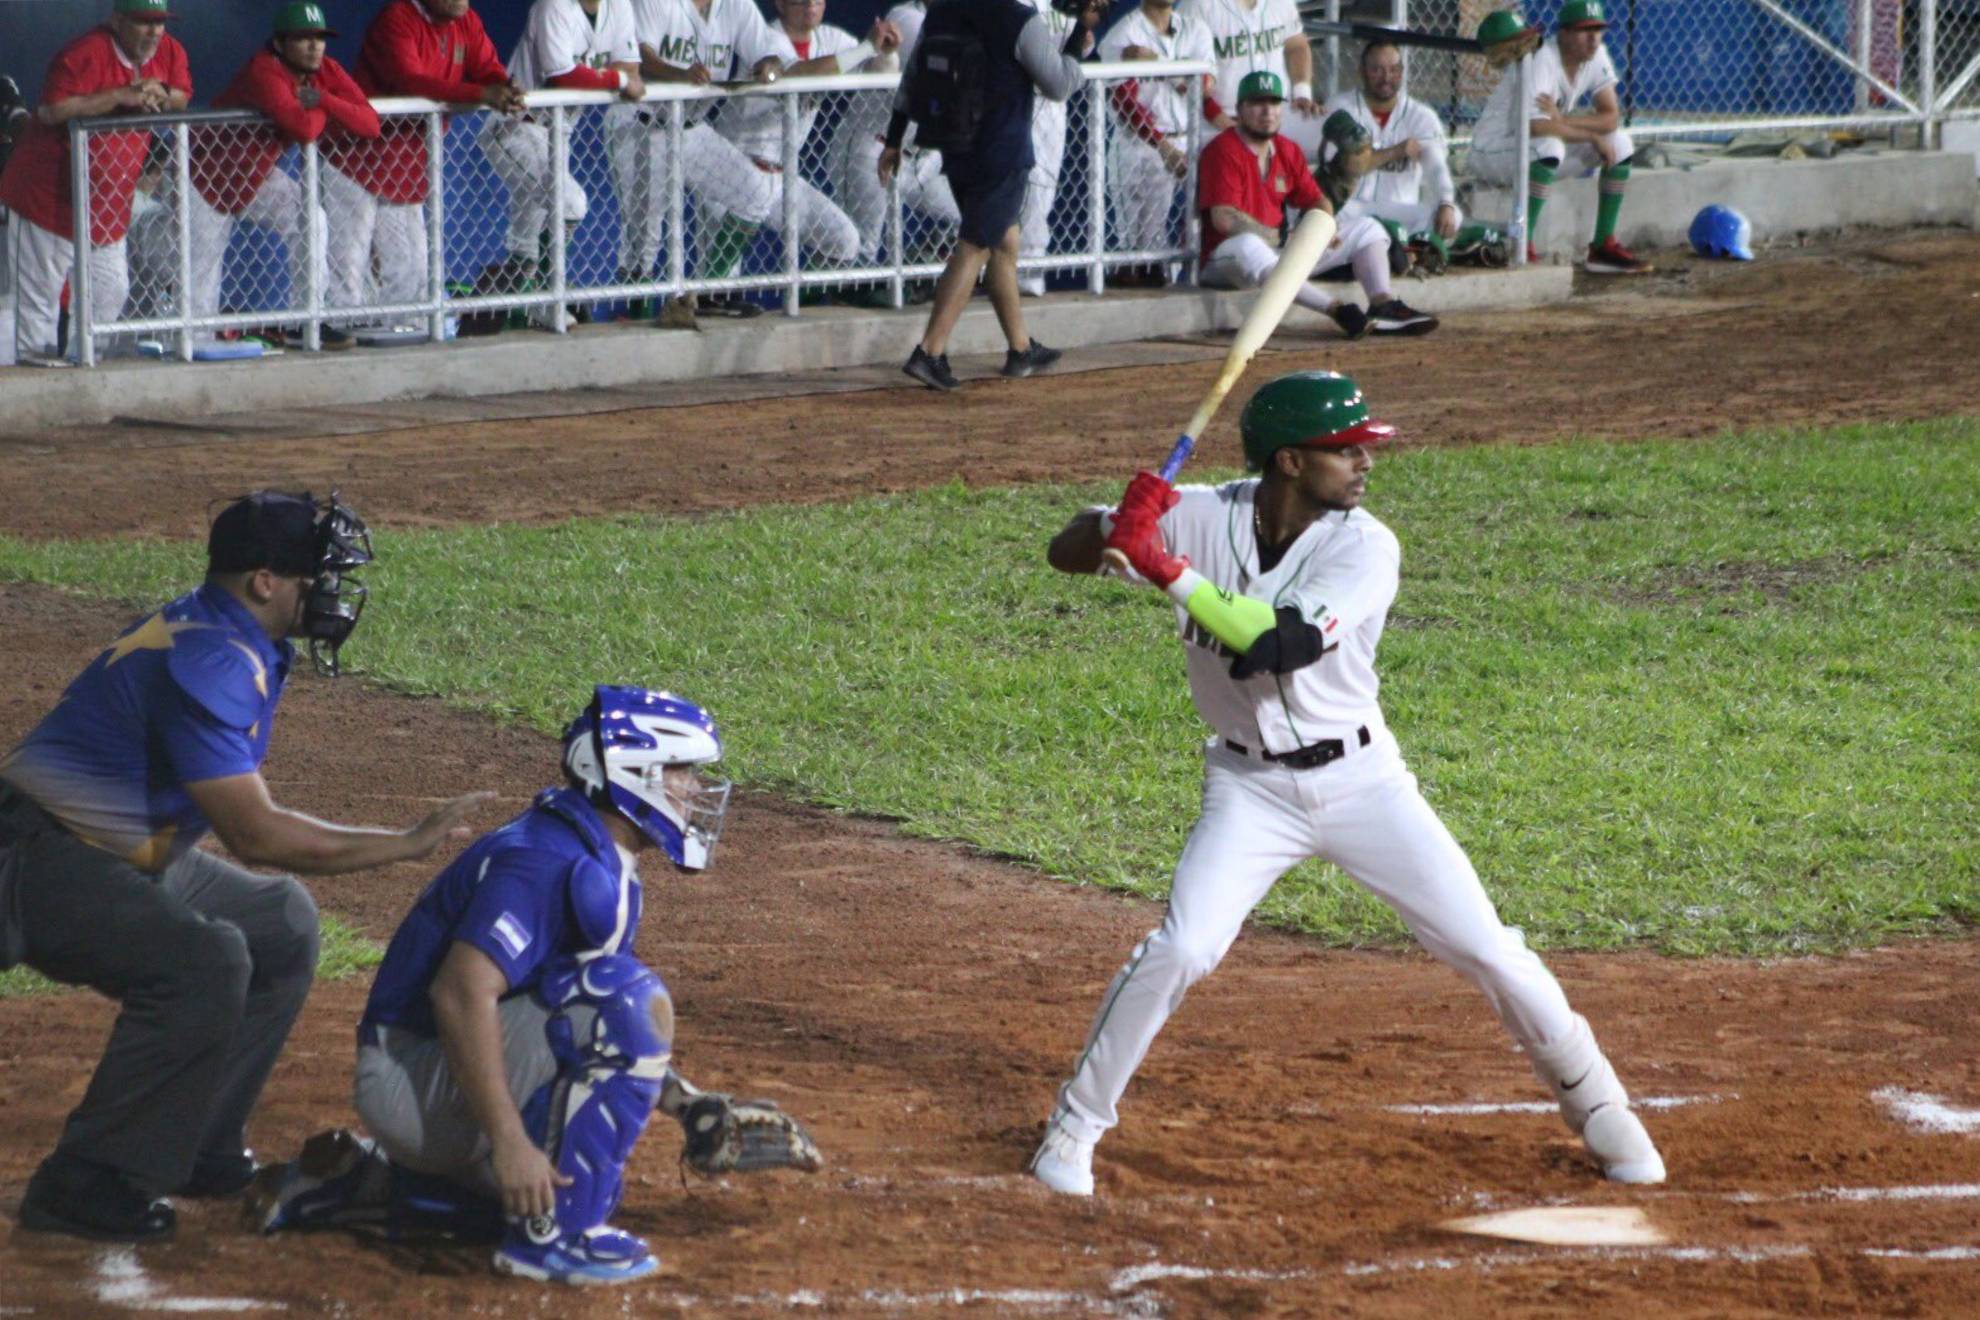 México define roster de beisbol para Juegos Centroamericanos y del Caribe, Comisión Nacional de Cultura Física y Deporte, Gobierno